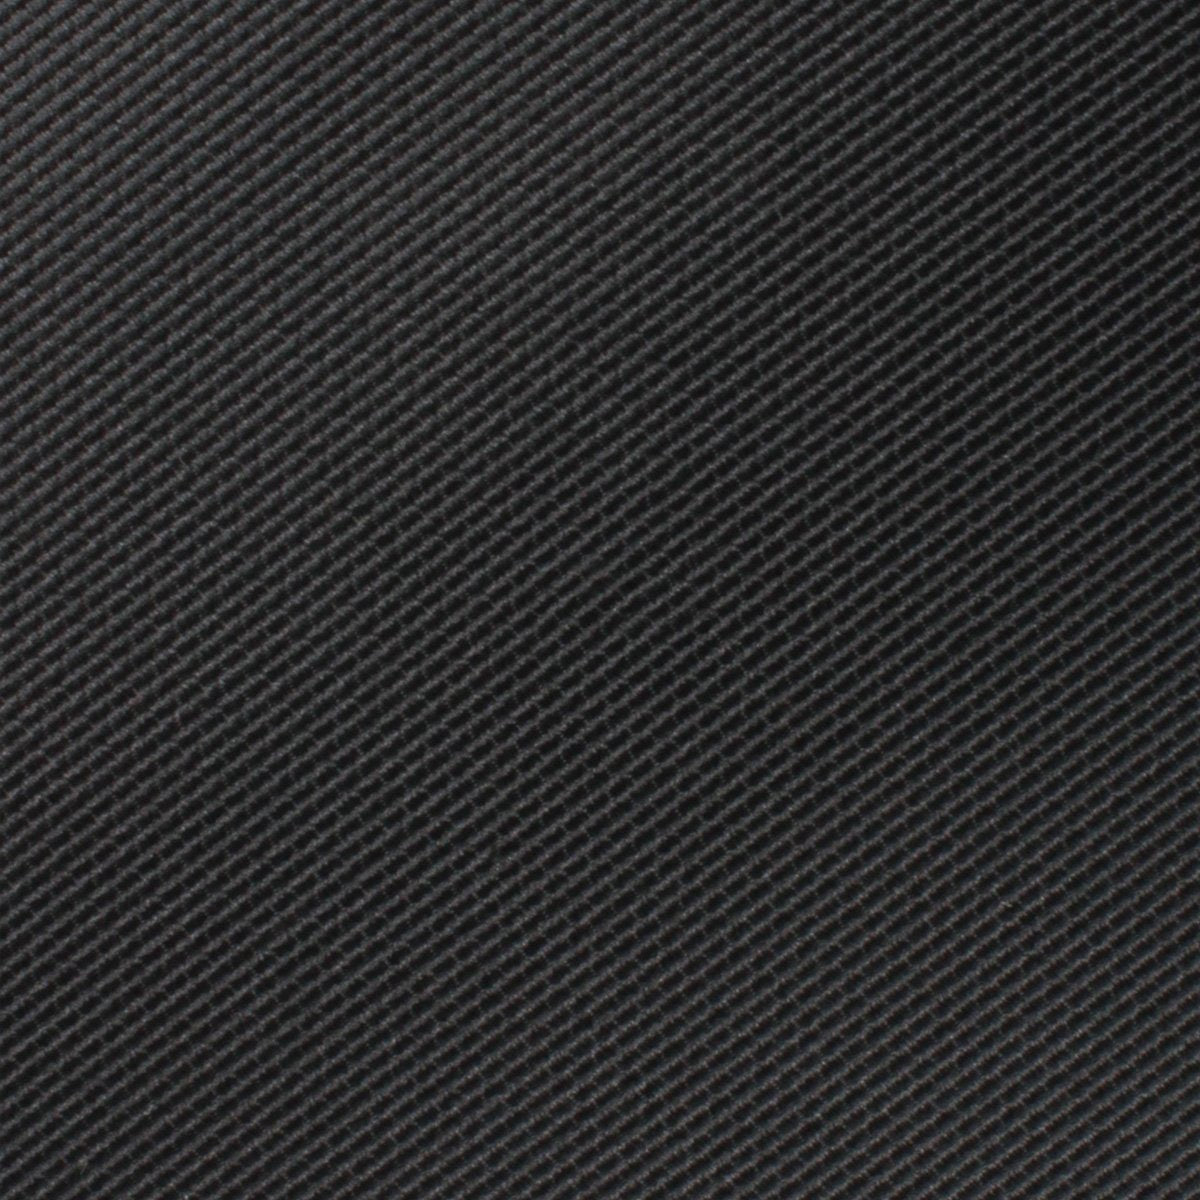 Black Weave Skinny Tie Fabric